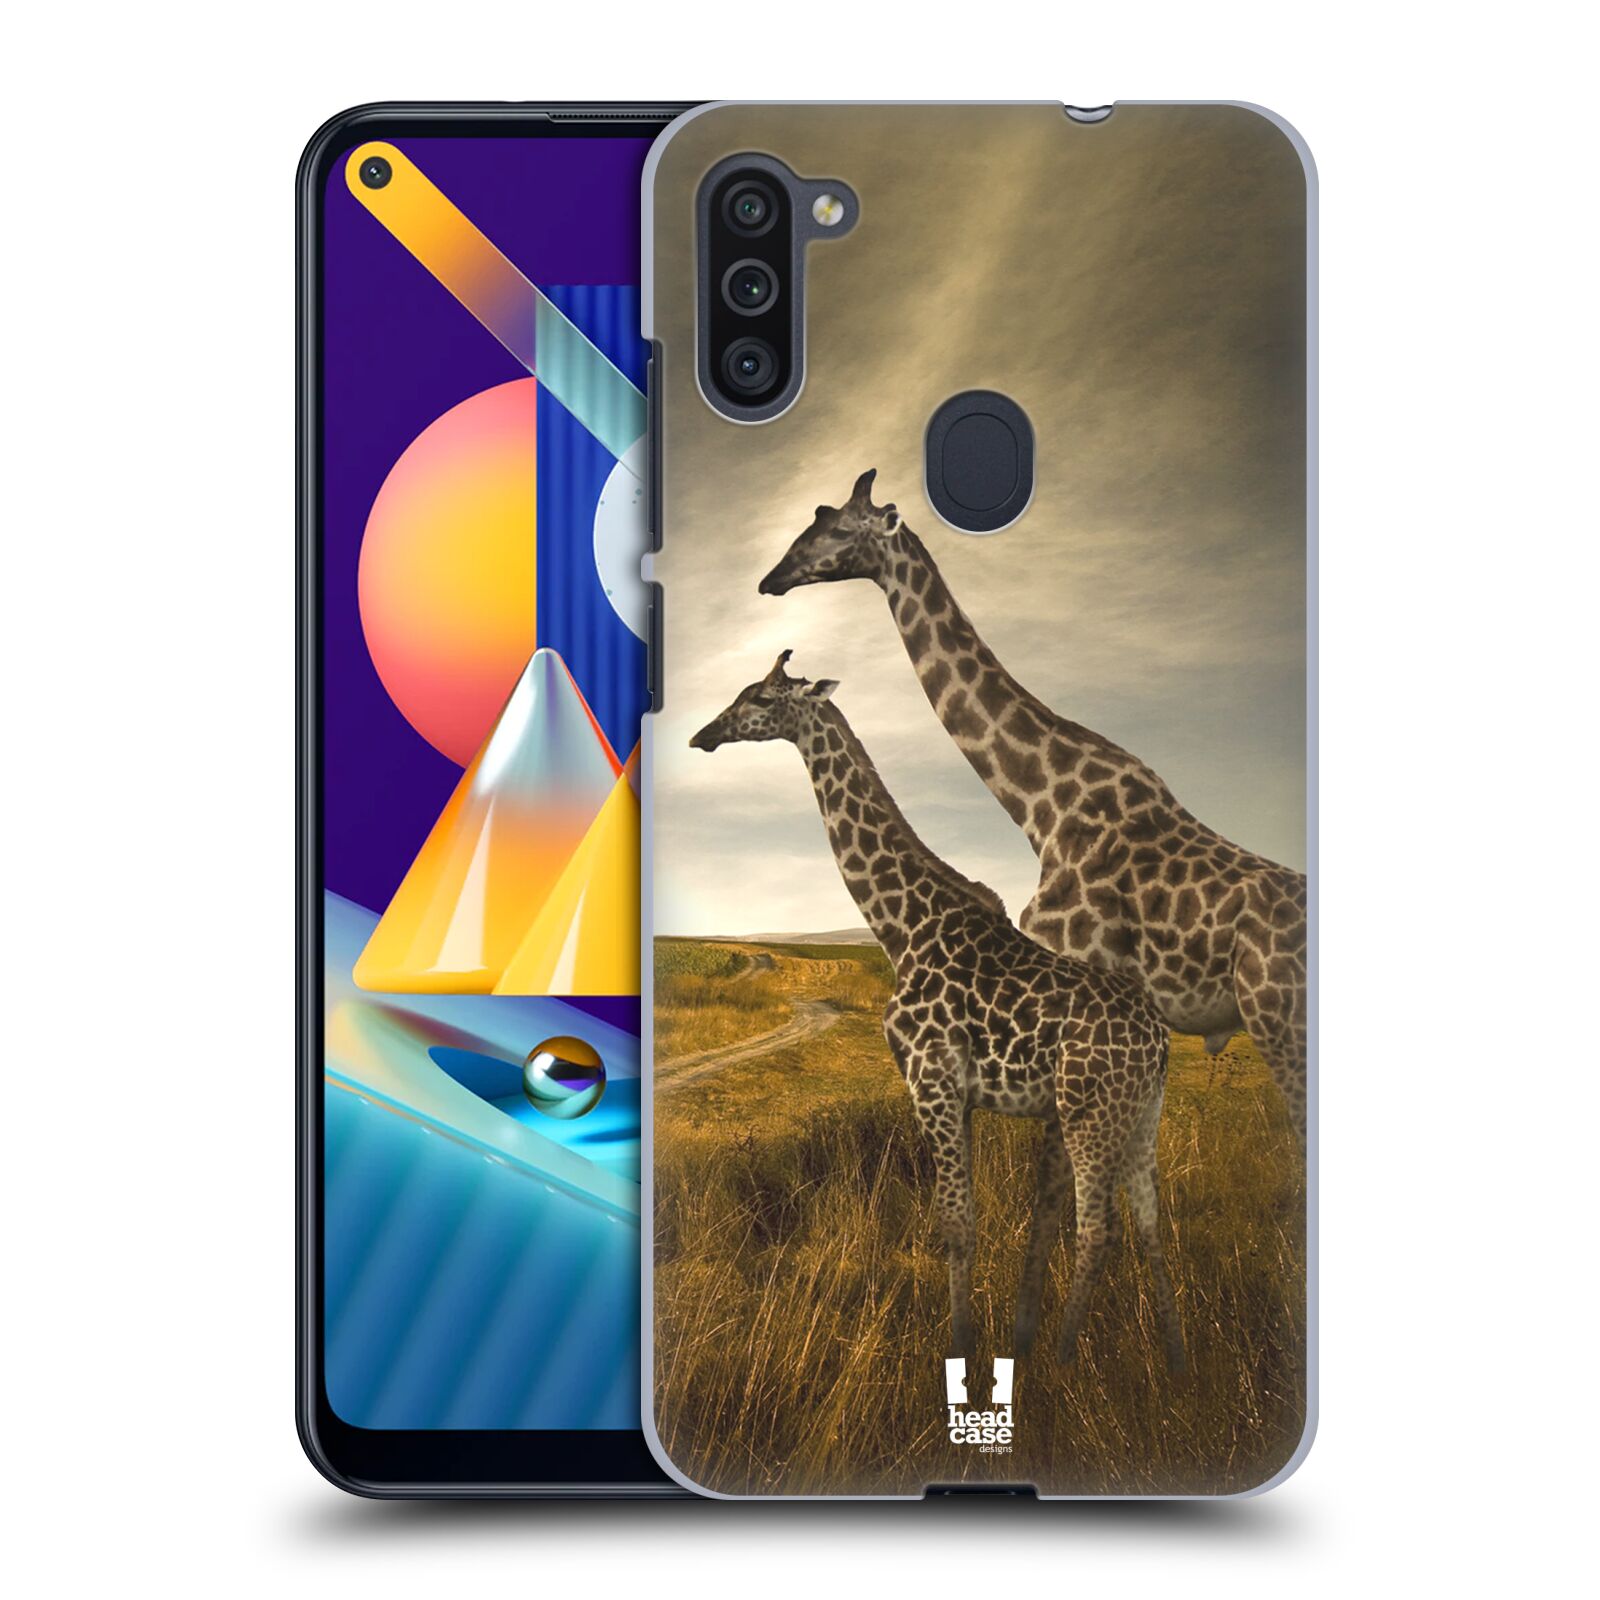 Zadní obal pro mobil Samsung Galaxy M11 - HEAD CASE - Svět zvířat žirafy